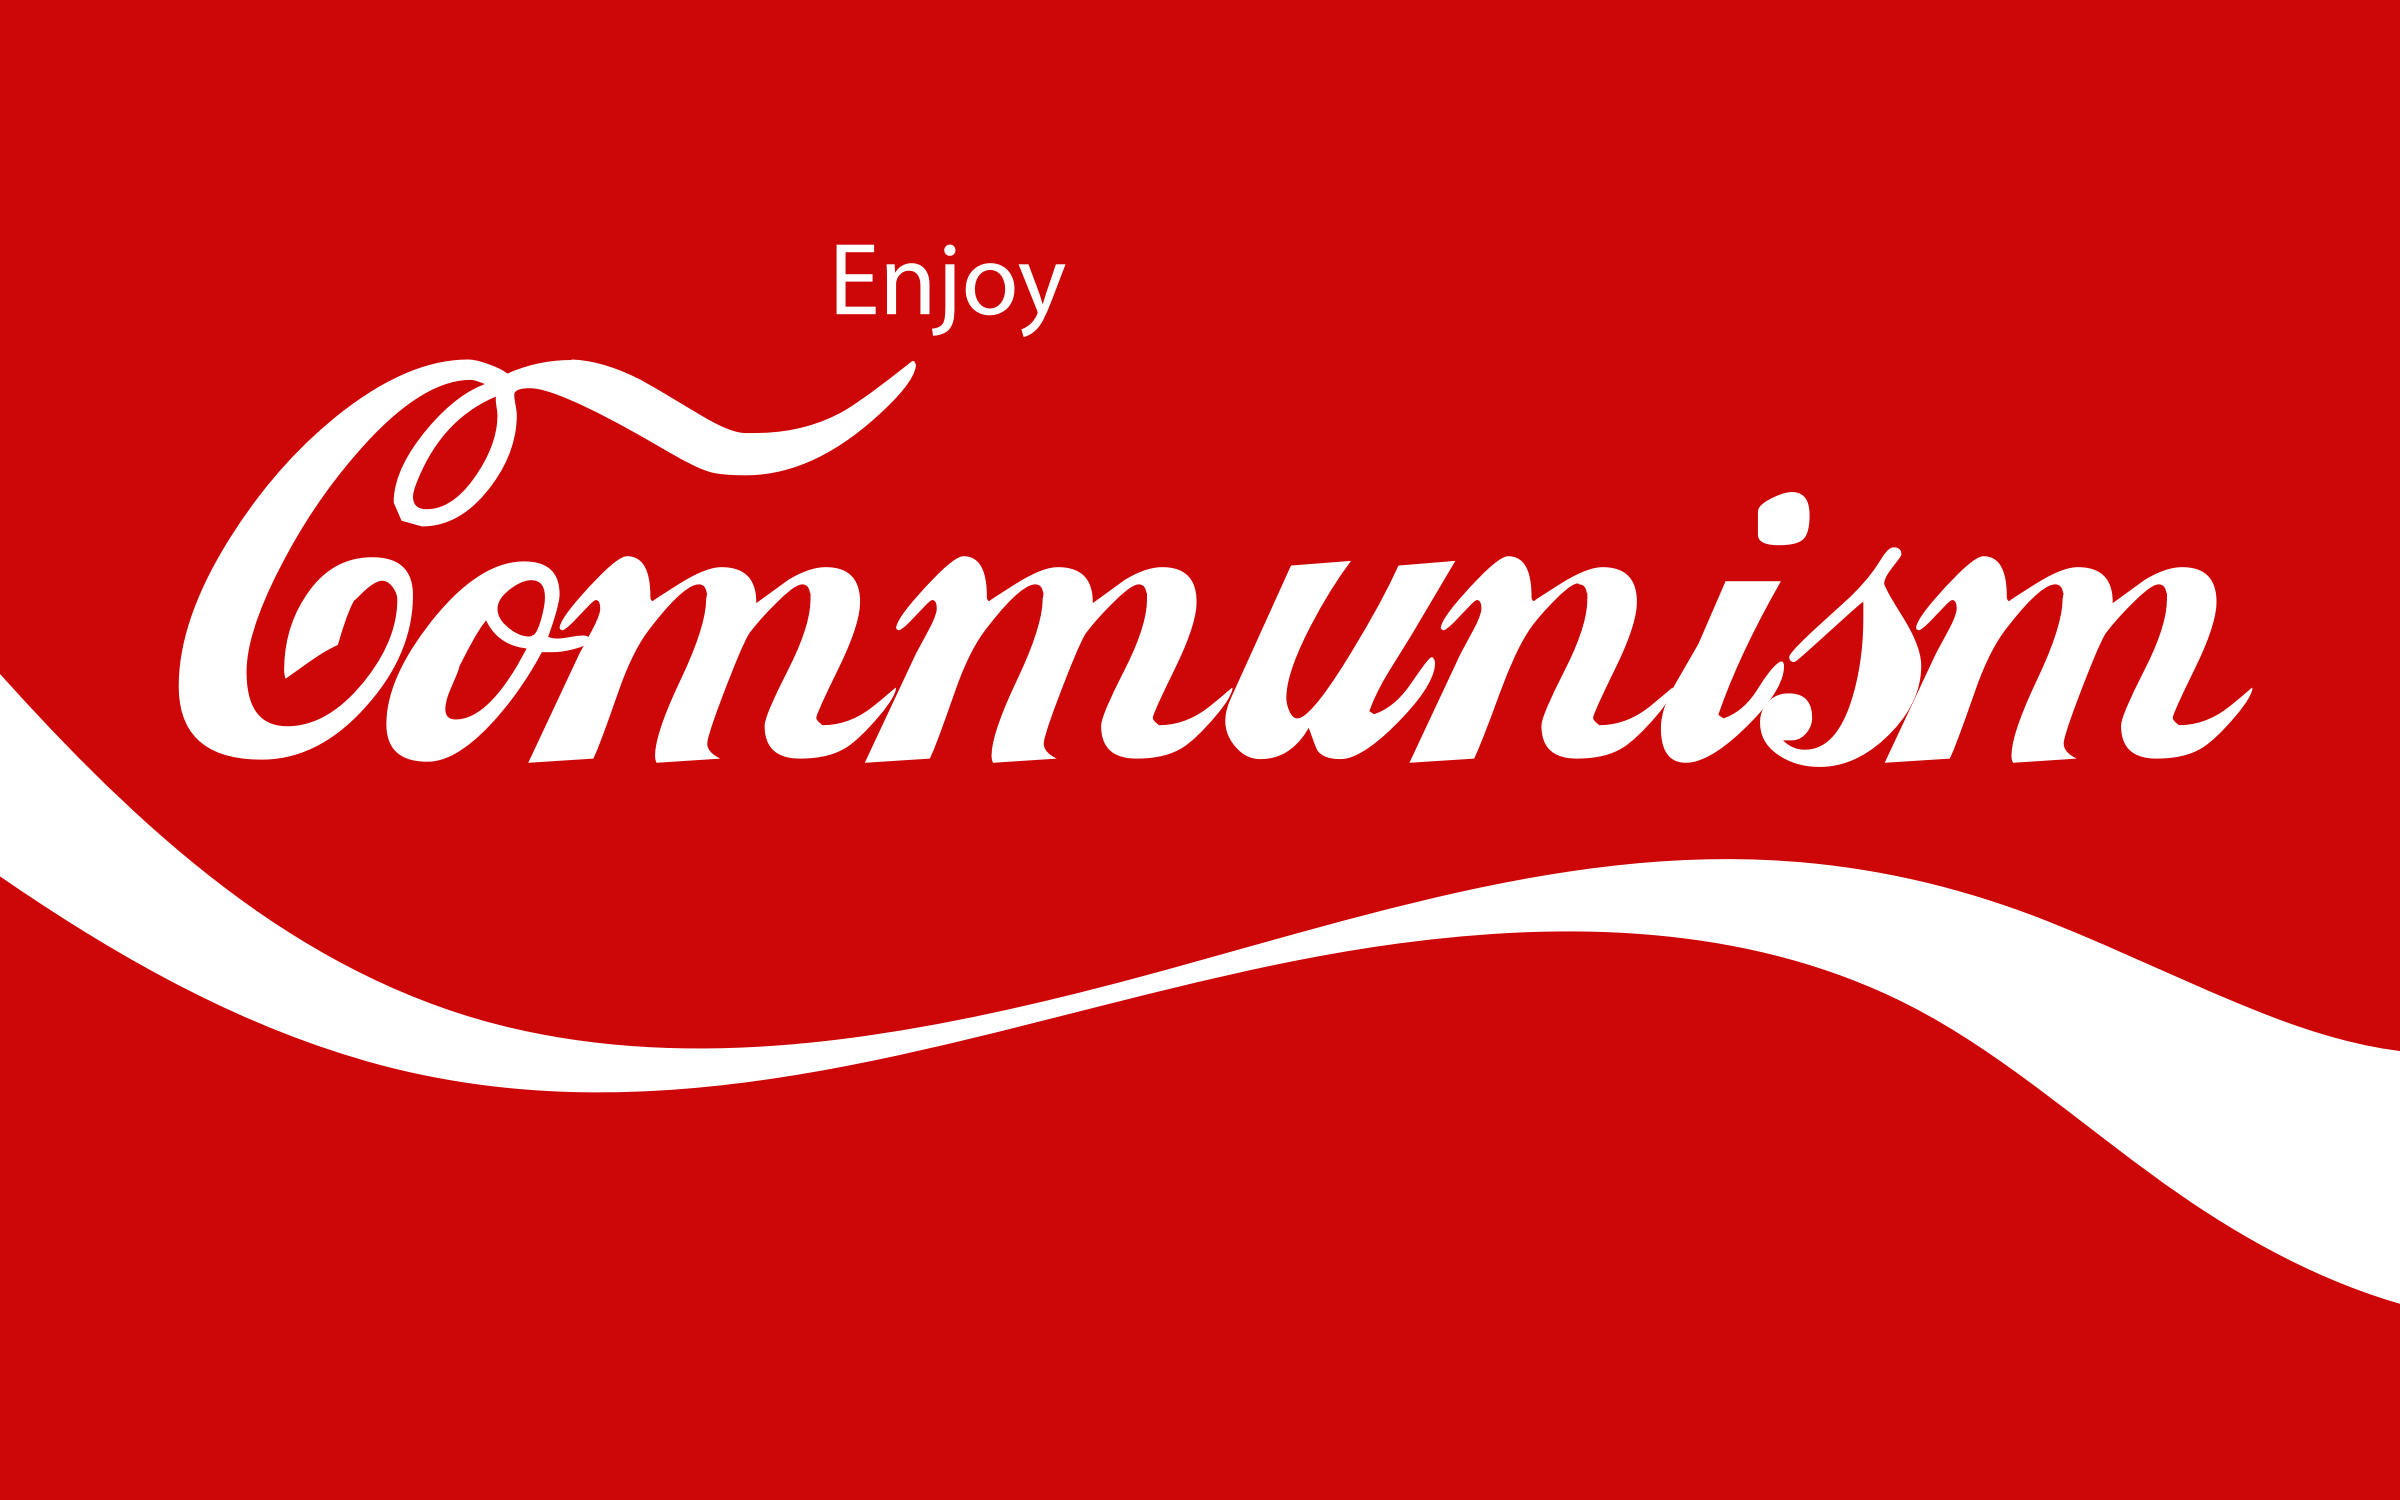 Communism wallpaper, Man Made, HQ Communism pictureK Wallpaper